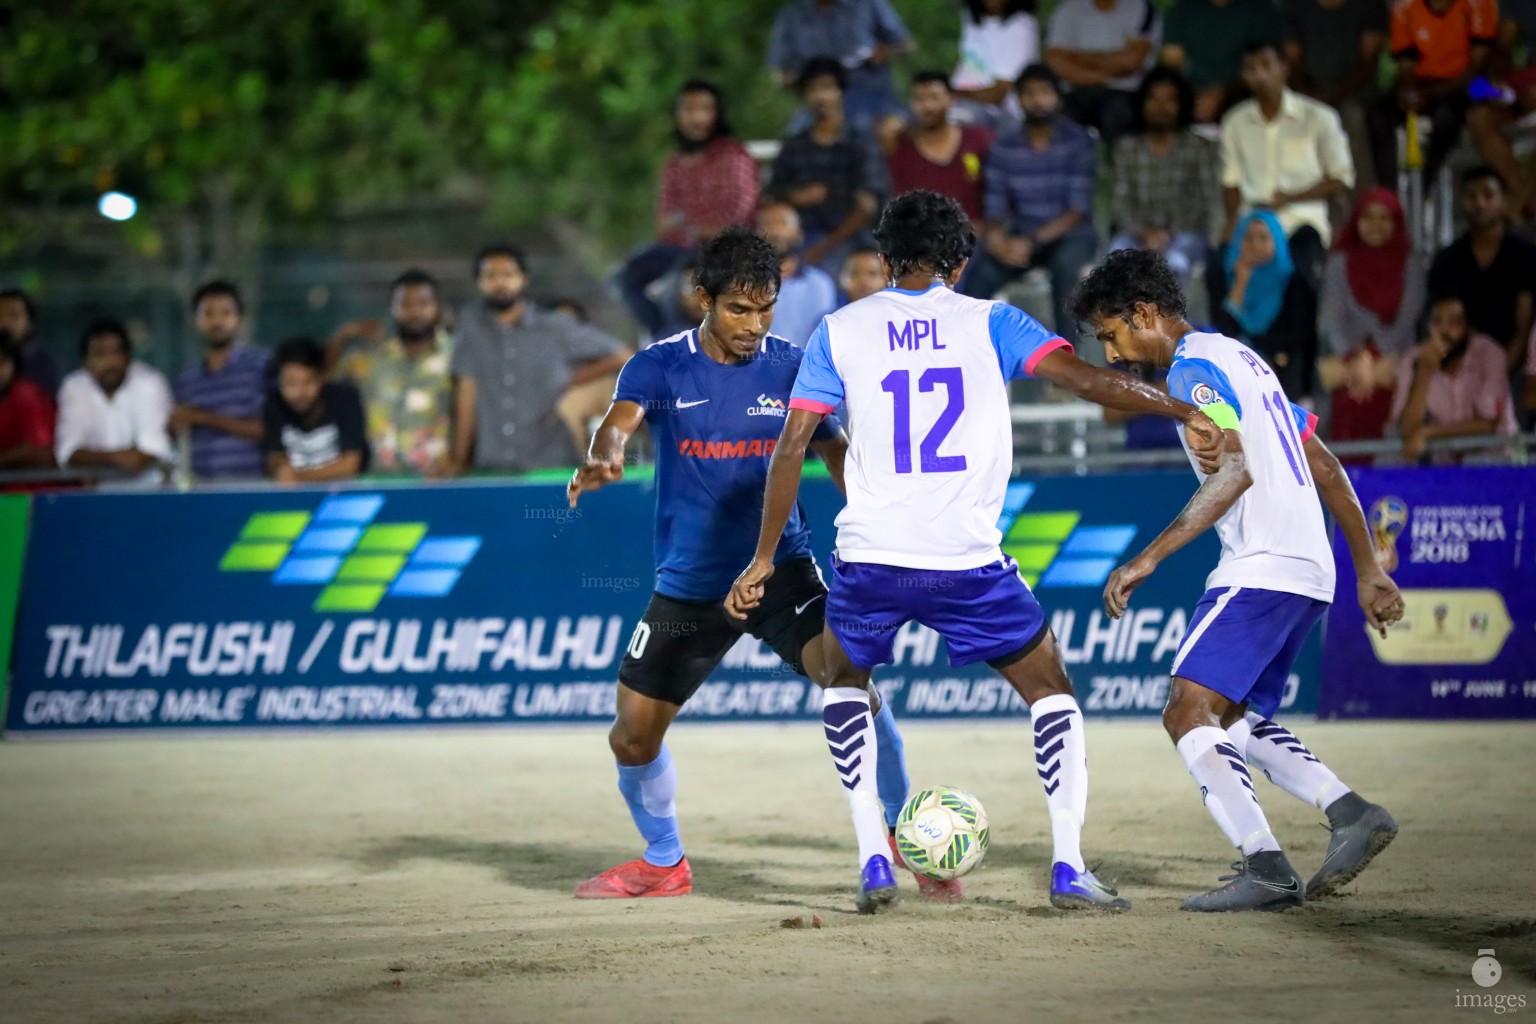 Club Maldives 2018 / Quarter Finals - Day 1